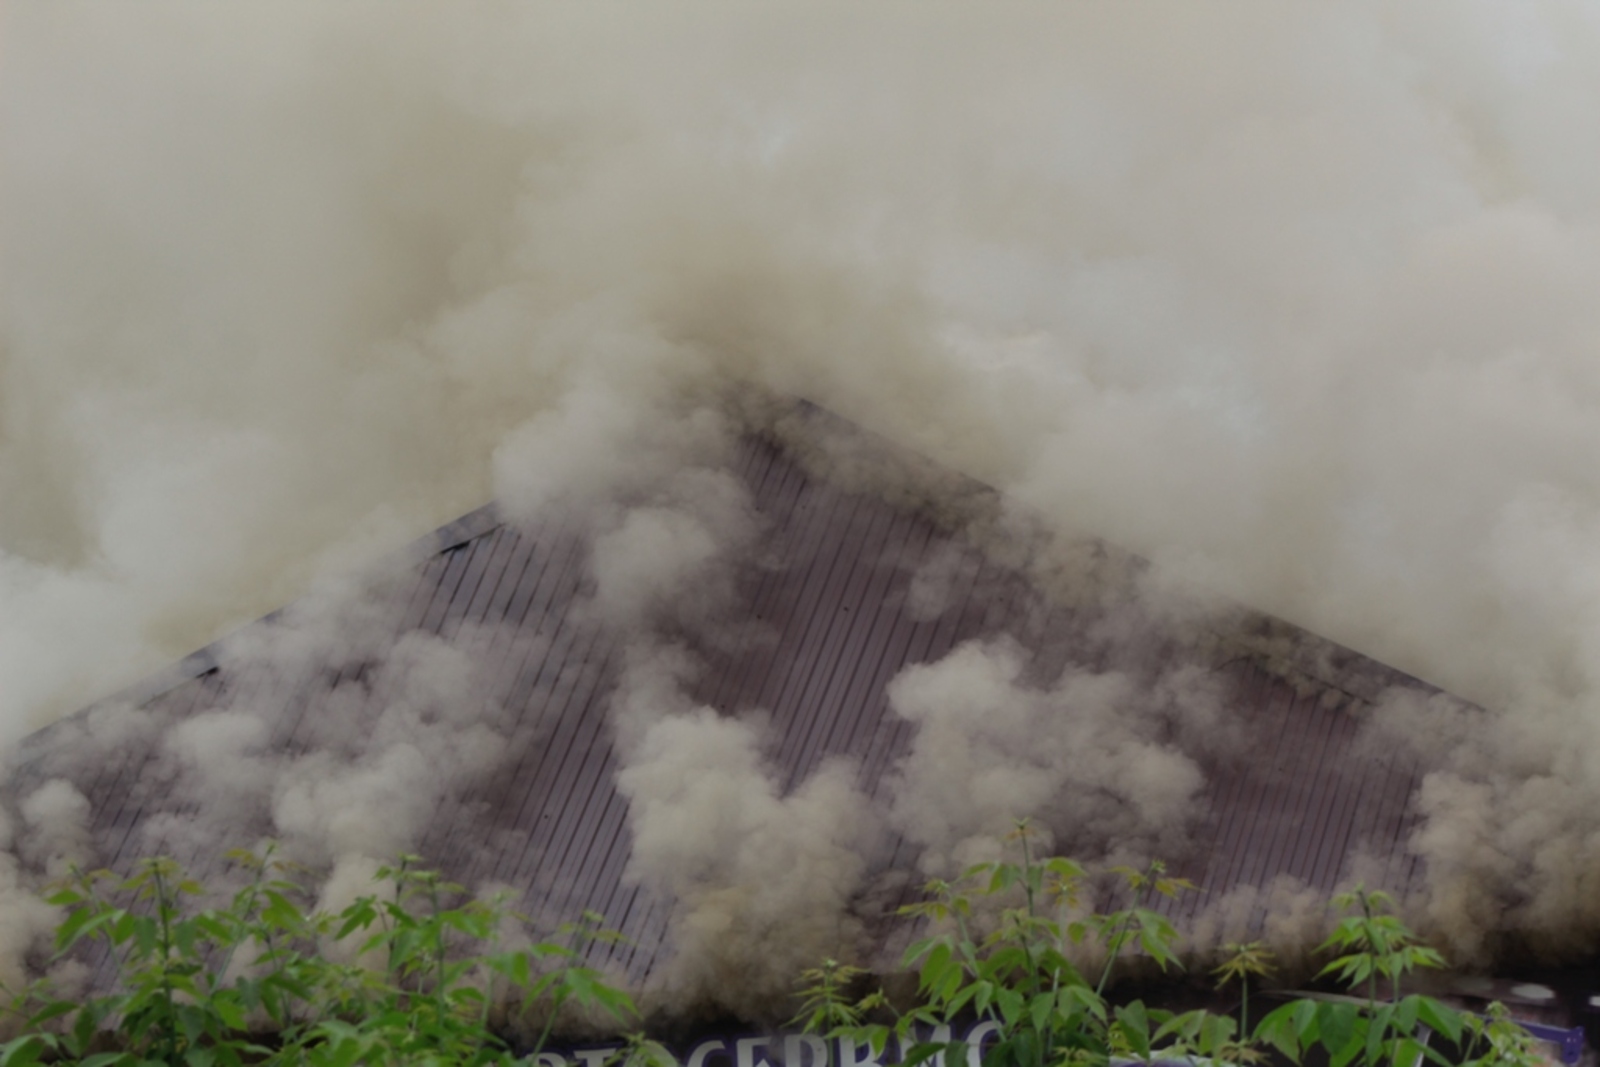 Крупный пожар в Янауле: горит автосервис